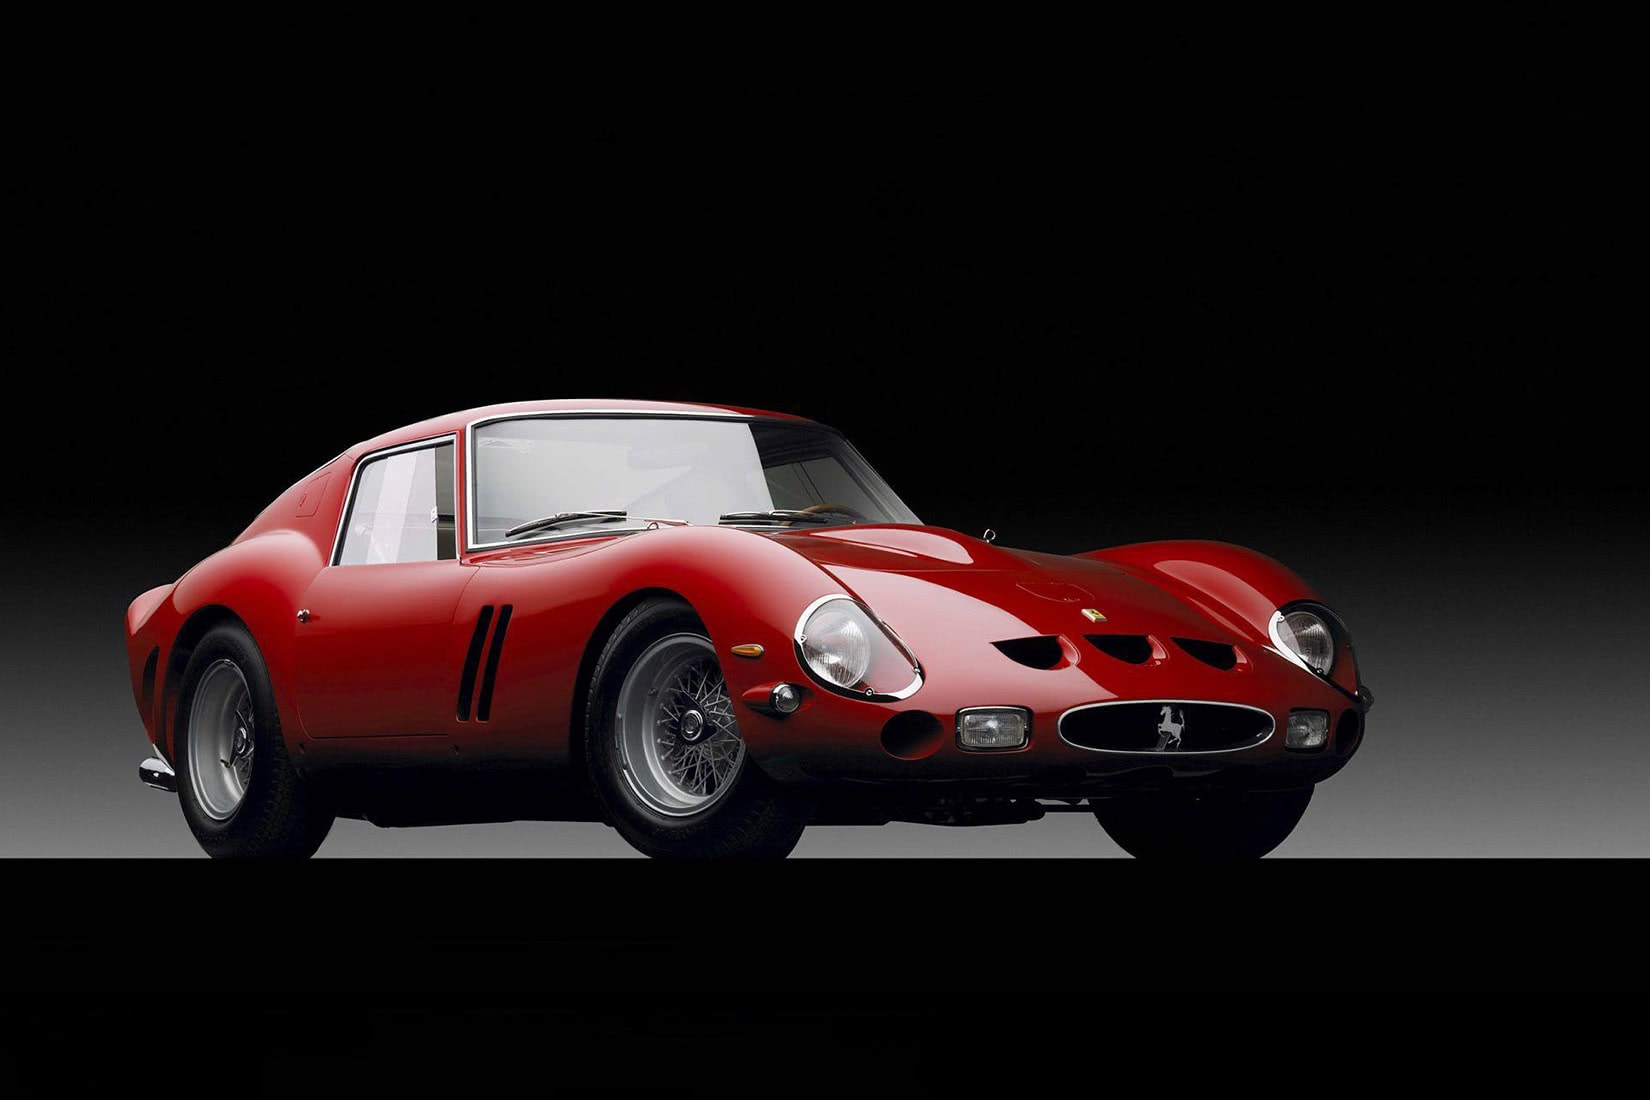 Les voitures les plus chères 2021 1963 Ferrari 250 GTO - Luxe Digital